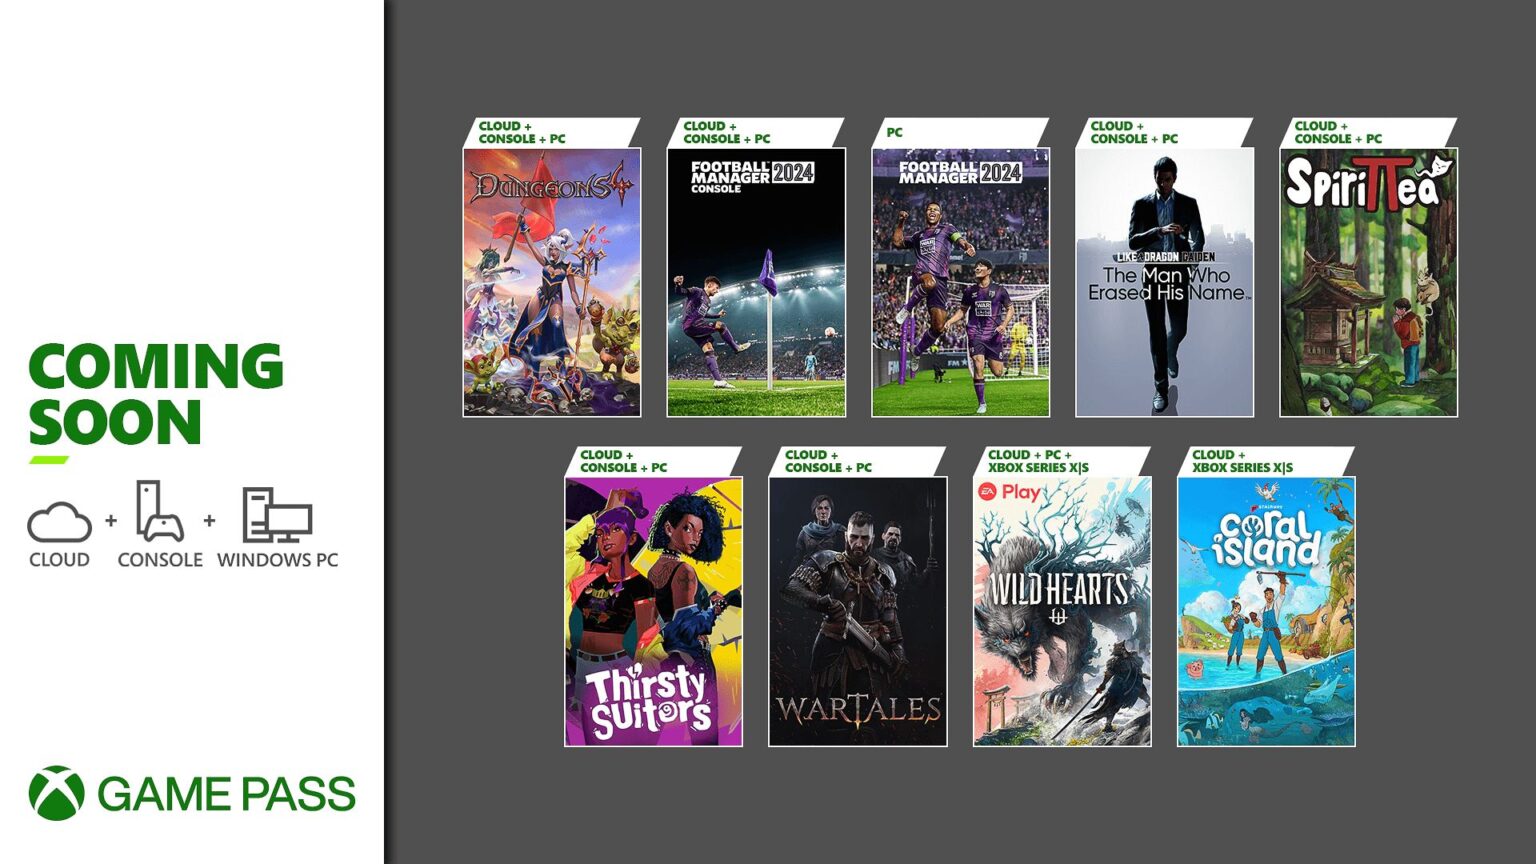 Xbox Game Pass: confira os jogos de setembro